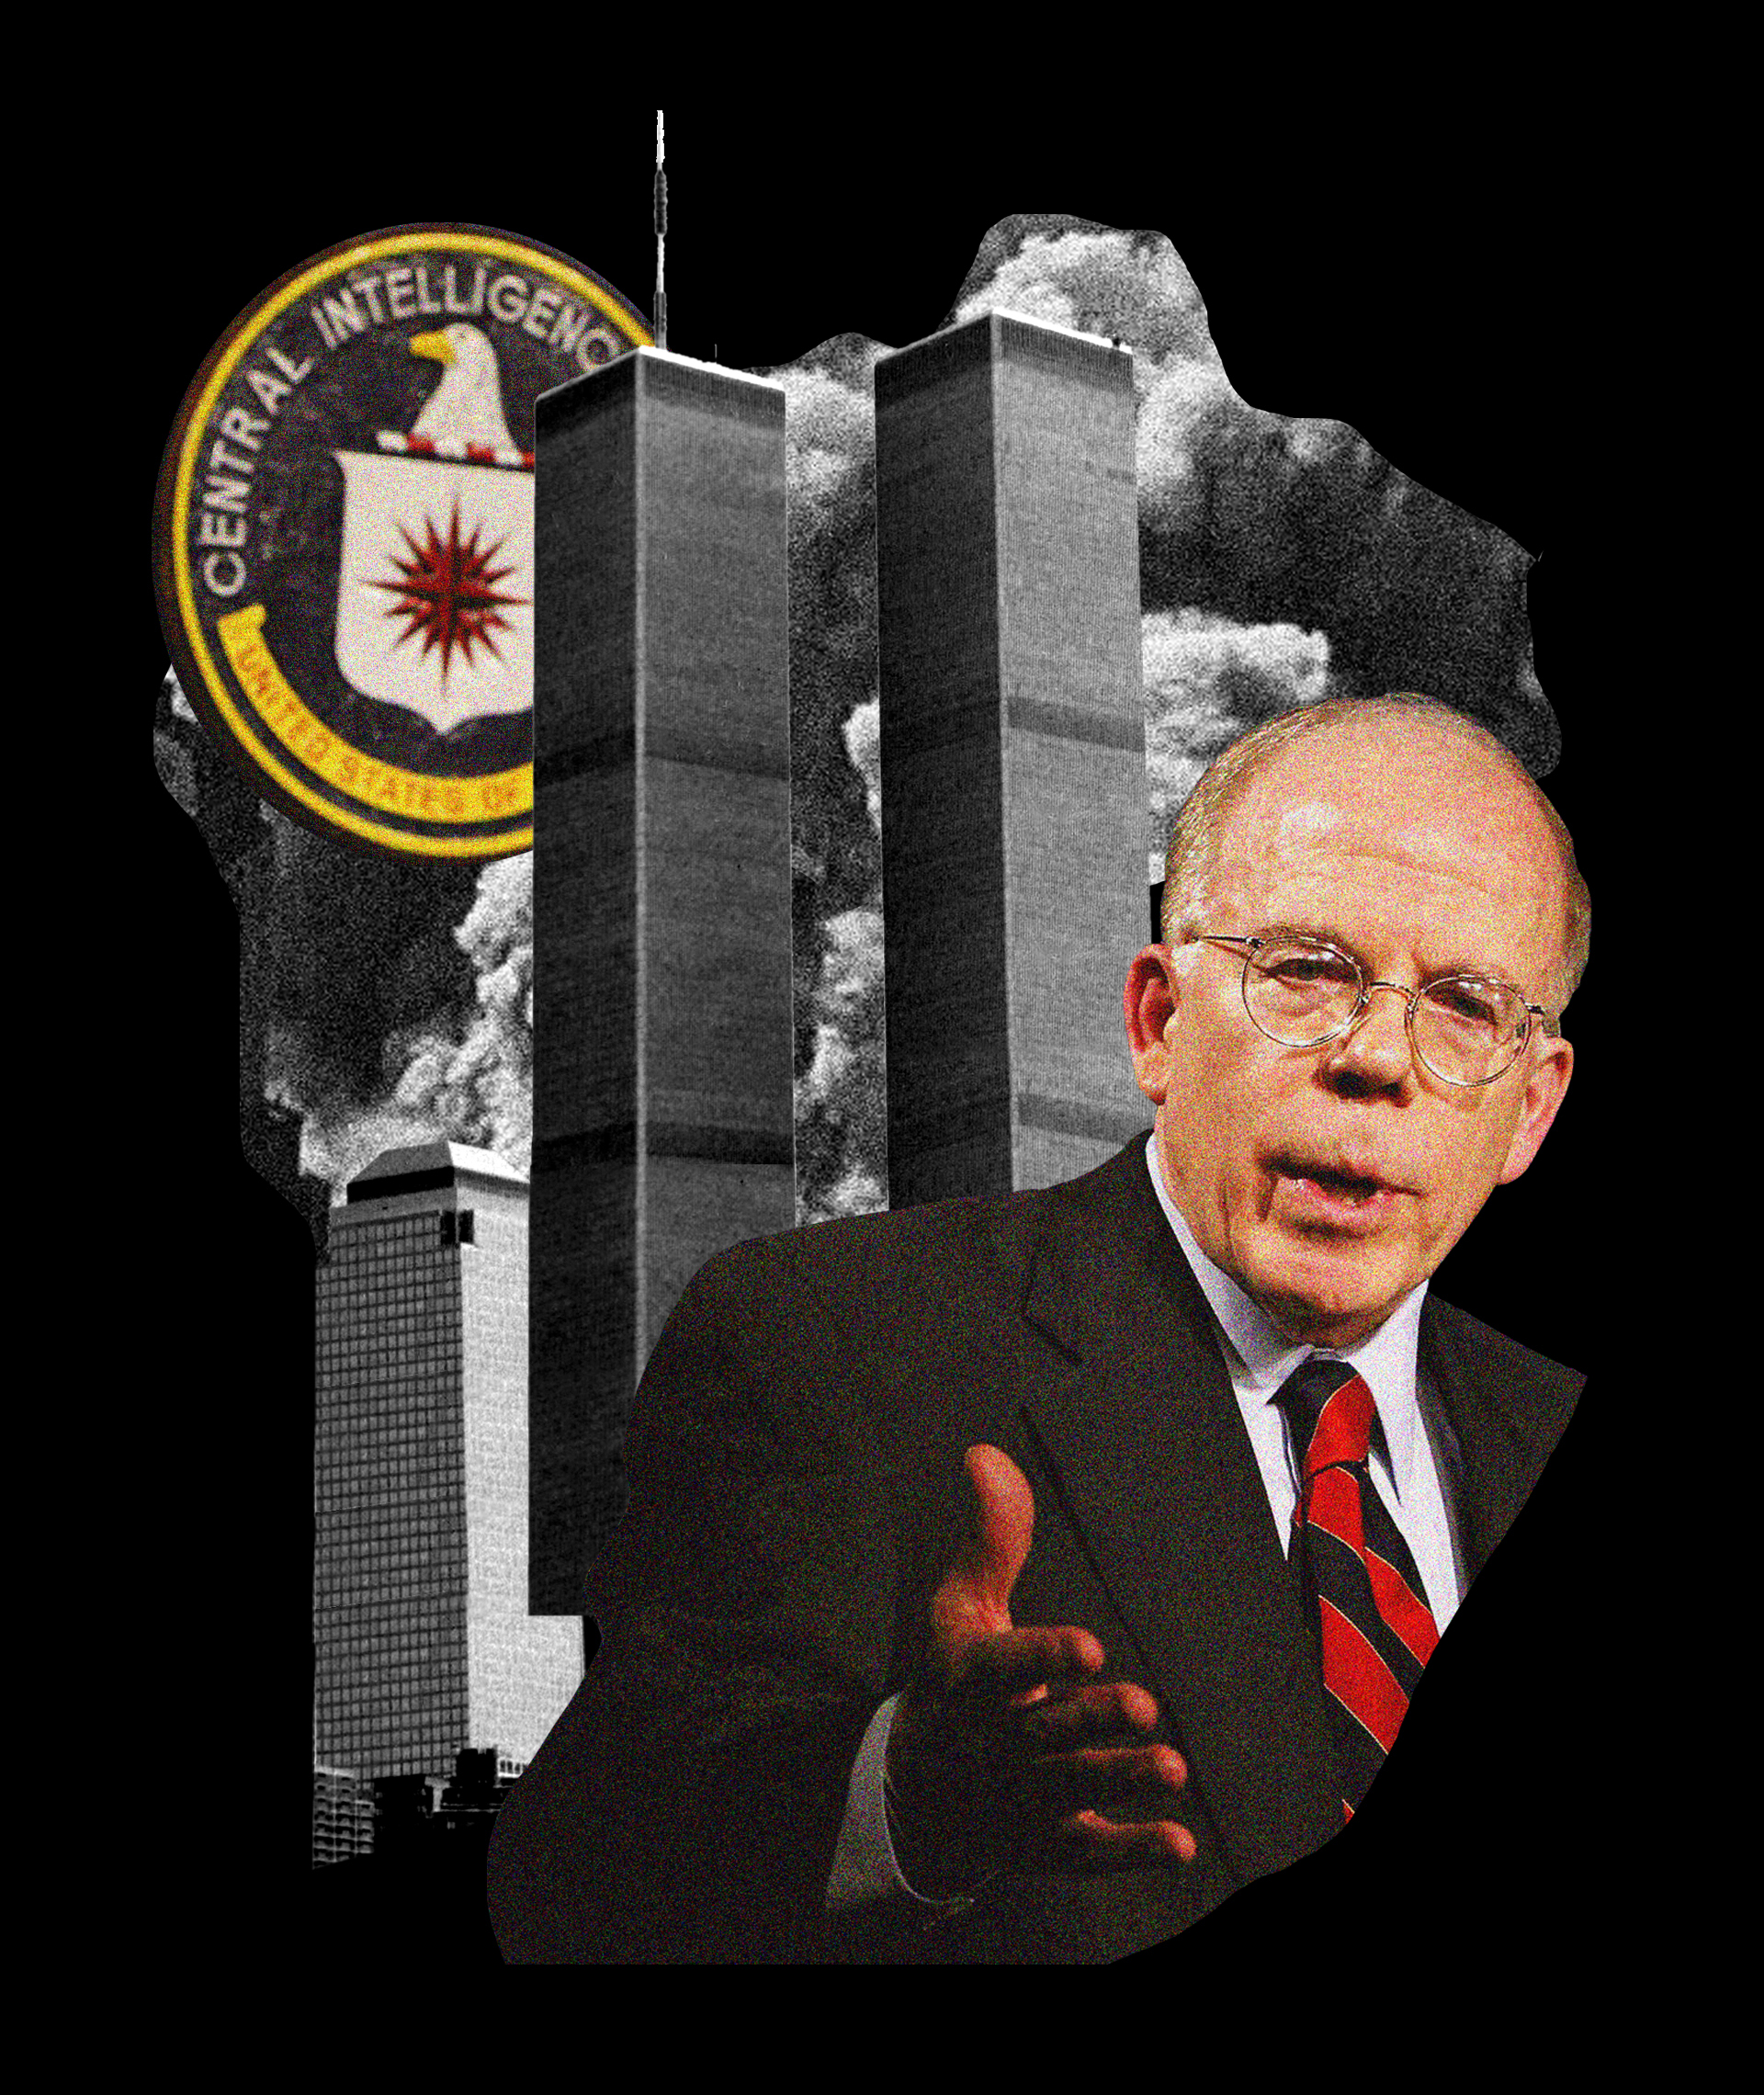 John McLaughlin, nmero 2 de la CIA en el 11-S: "Cuando se estrell el segundo avin pens: 'Esto era lo que llevbamos esperando todo el verano'"